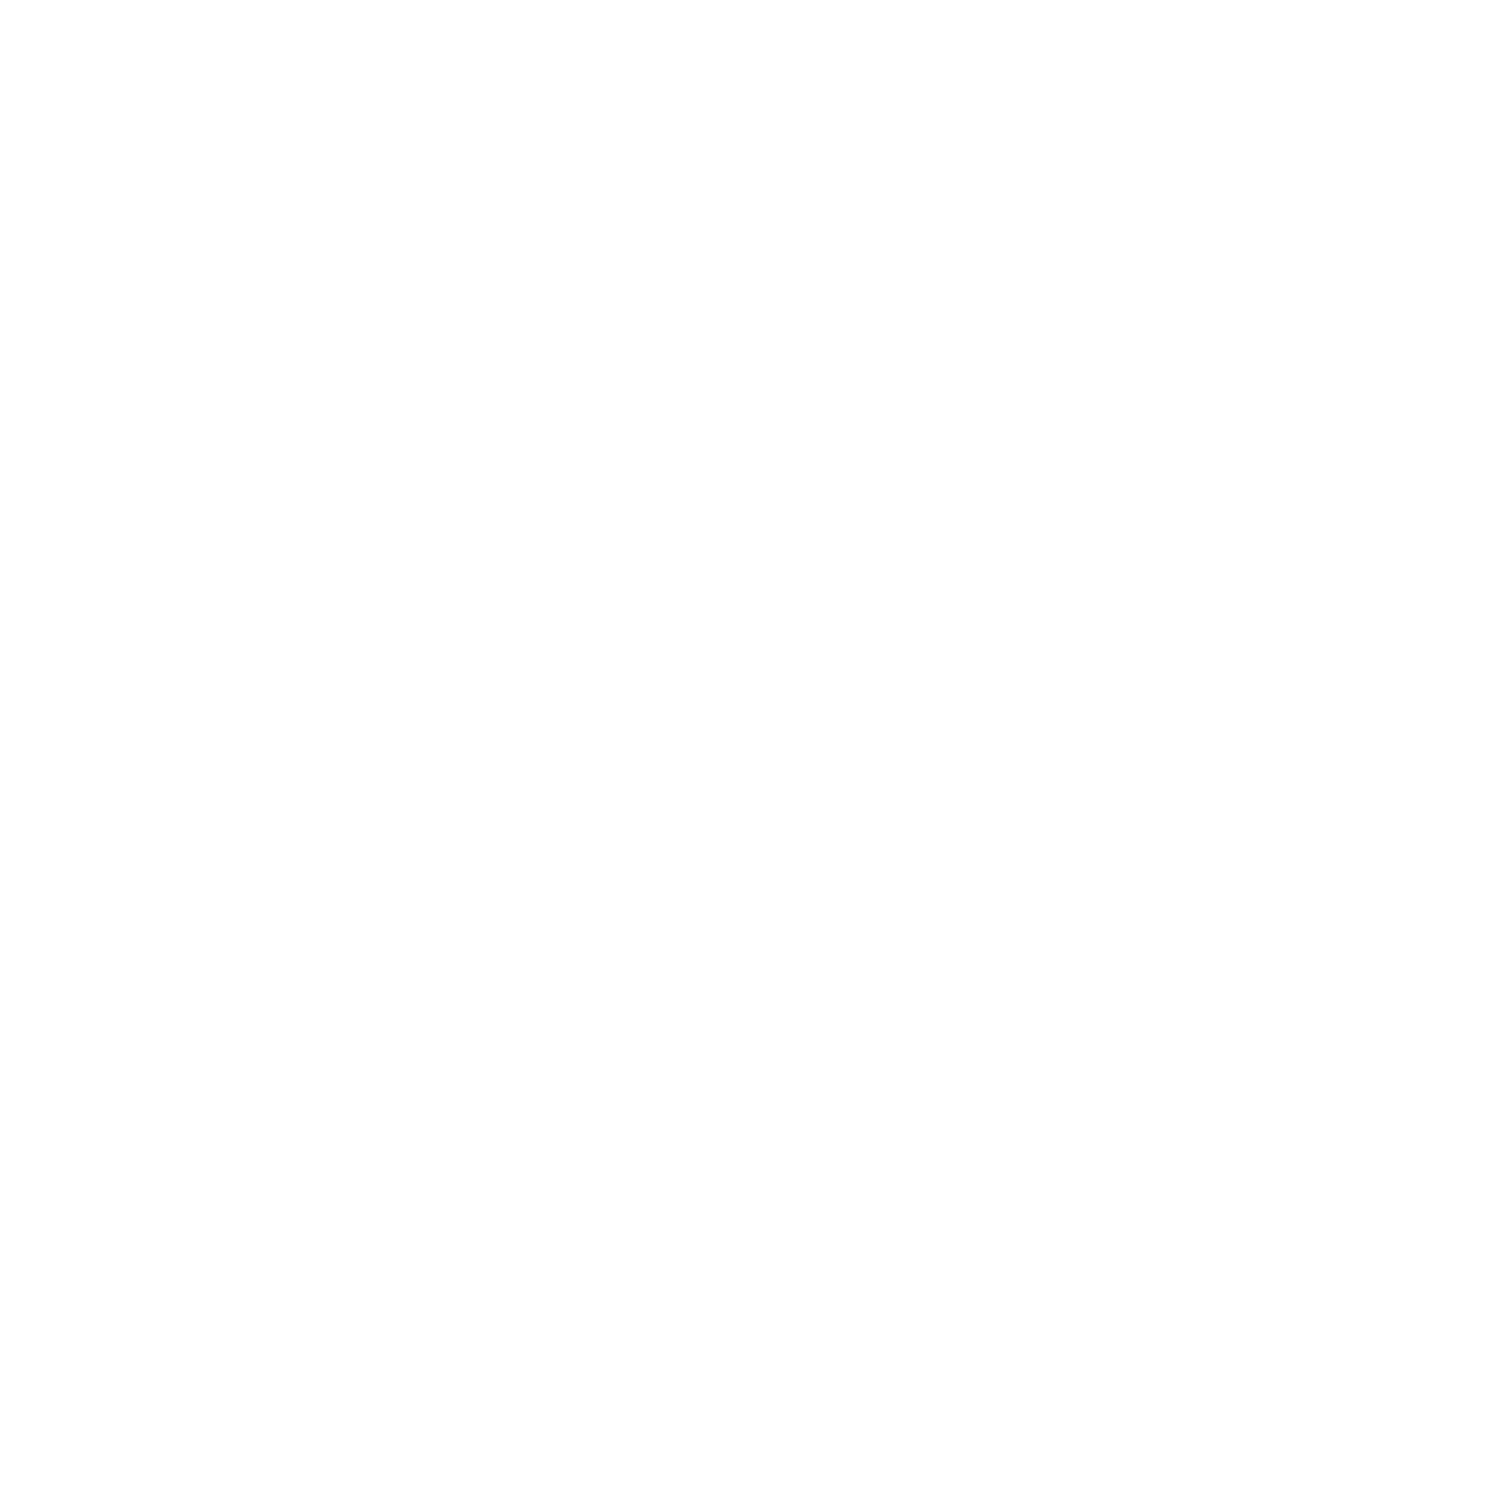 Hope East Church // Manhasset, NY